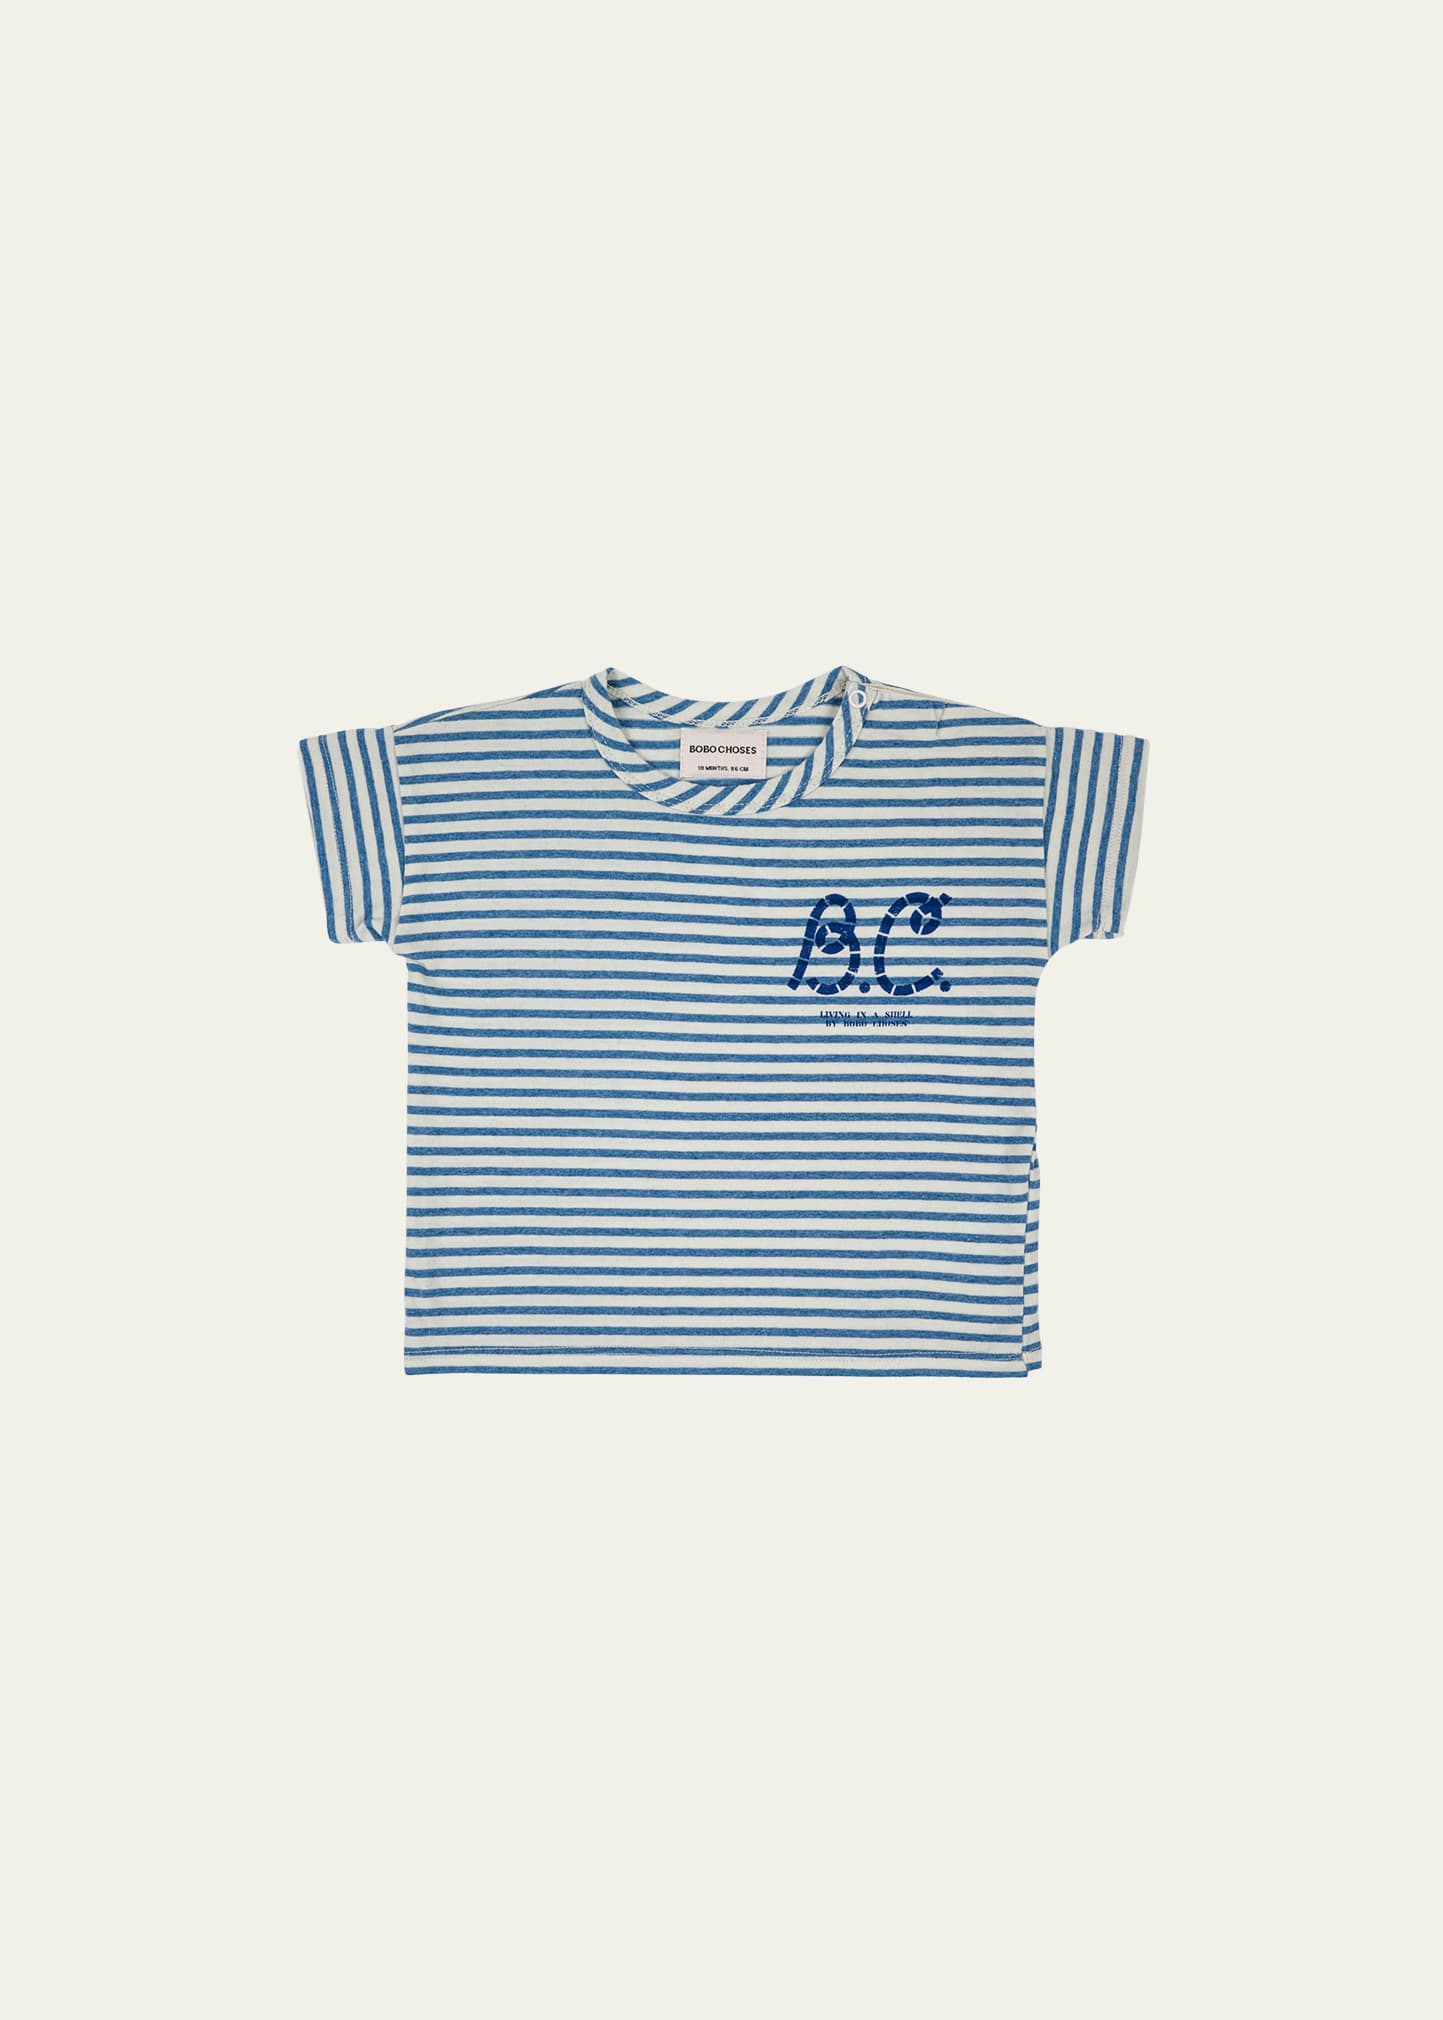 Bobo Choses Girl's Logo-Print Striped T-Shirt, Size 6M-24M